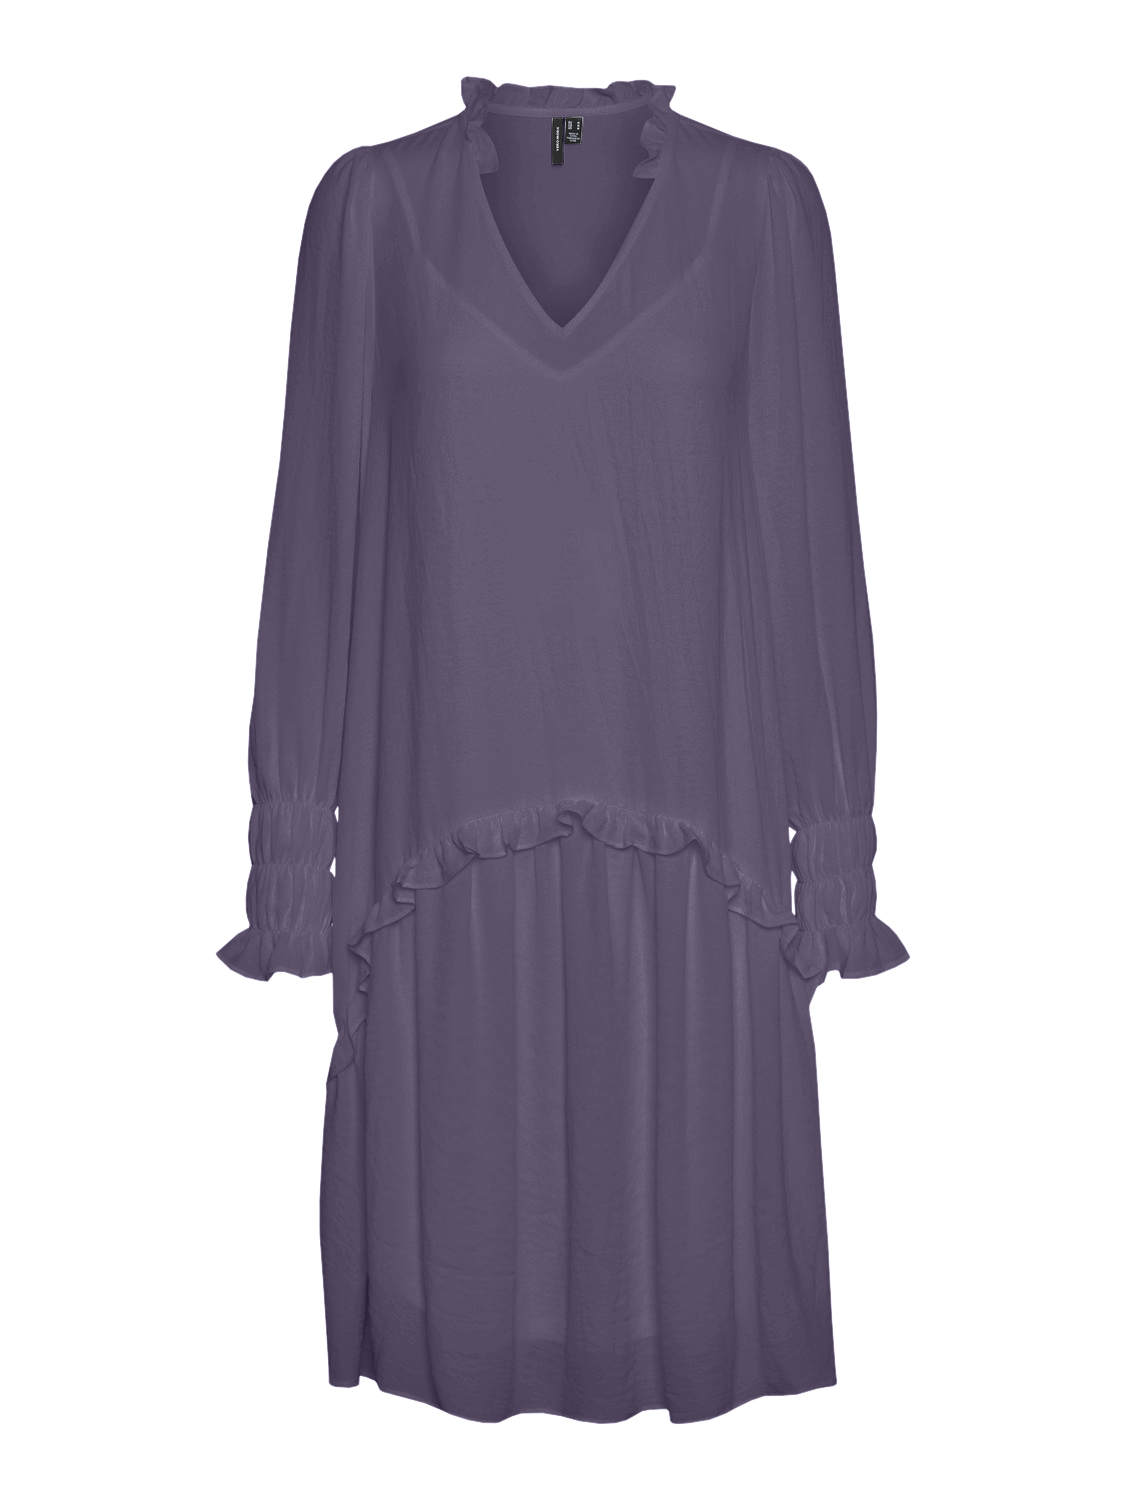 VMZIGGA Dress - Mulled Grape